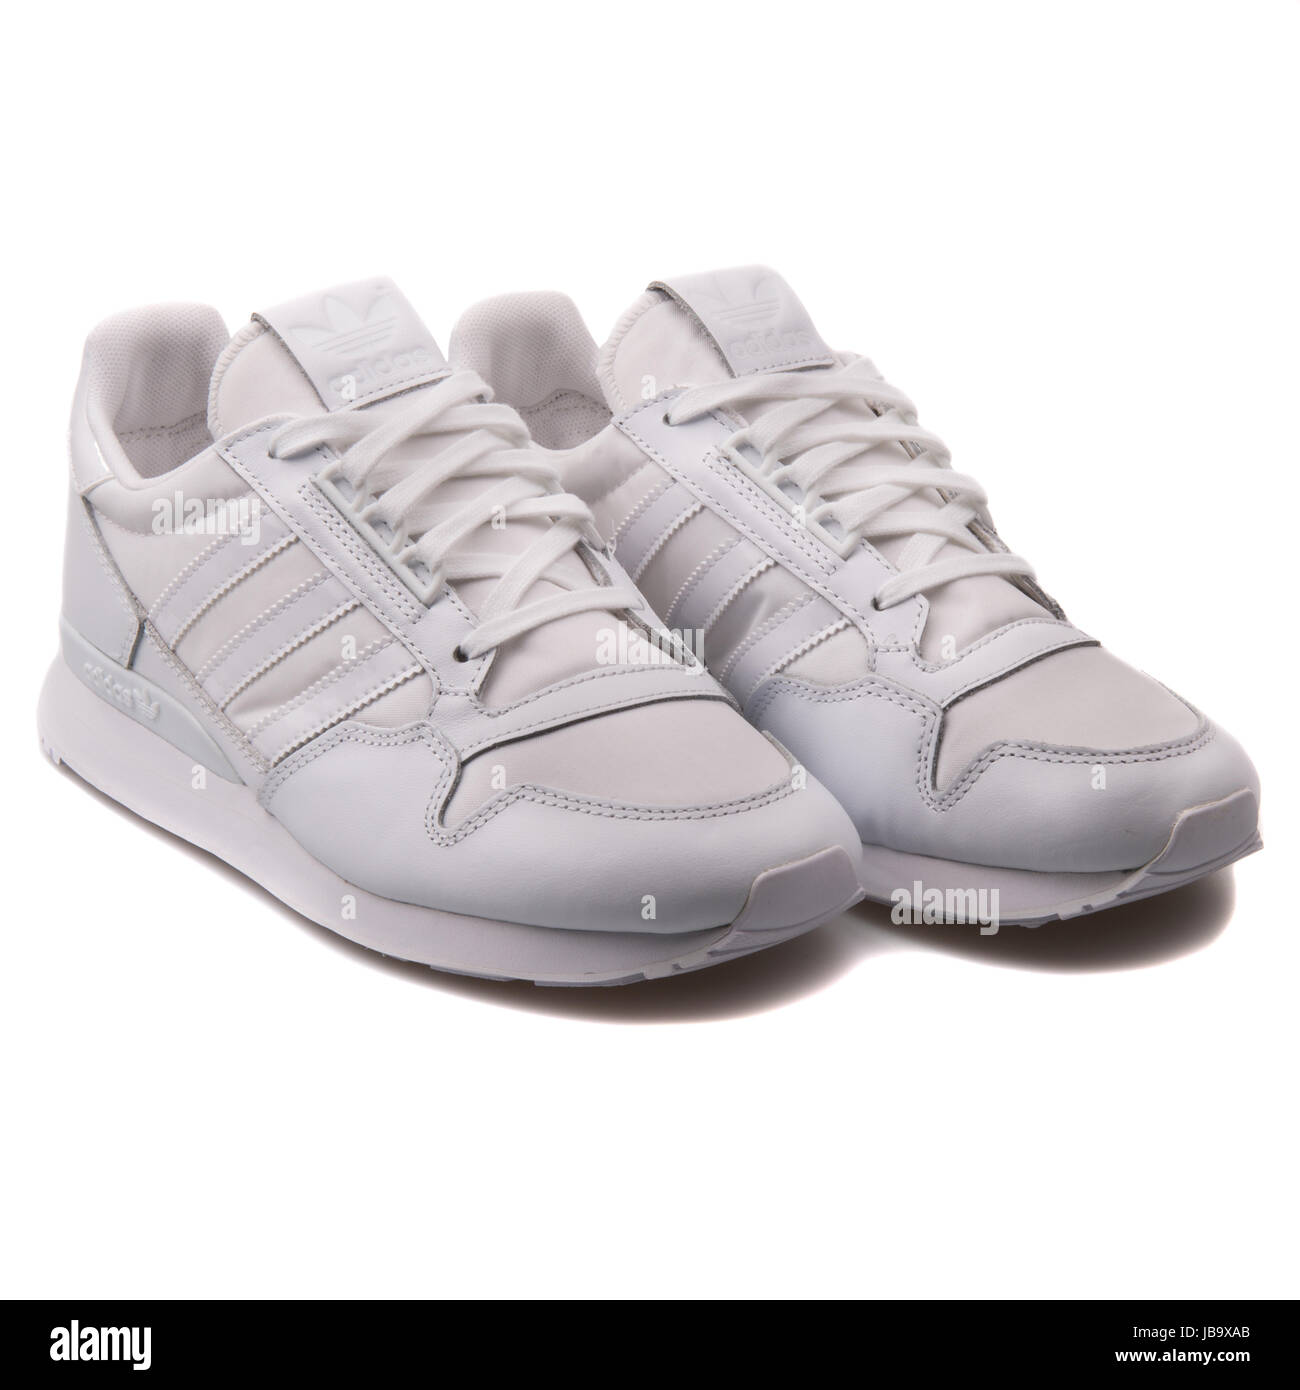 Adidas ZX 500 OG W White Women's Sports Shoes - B25600 Stock Photo - Alamy